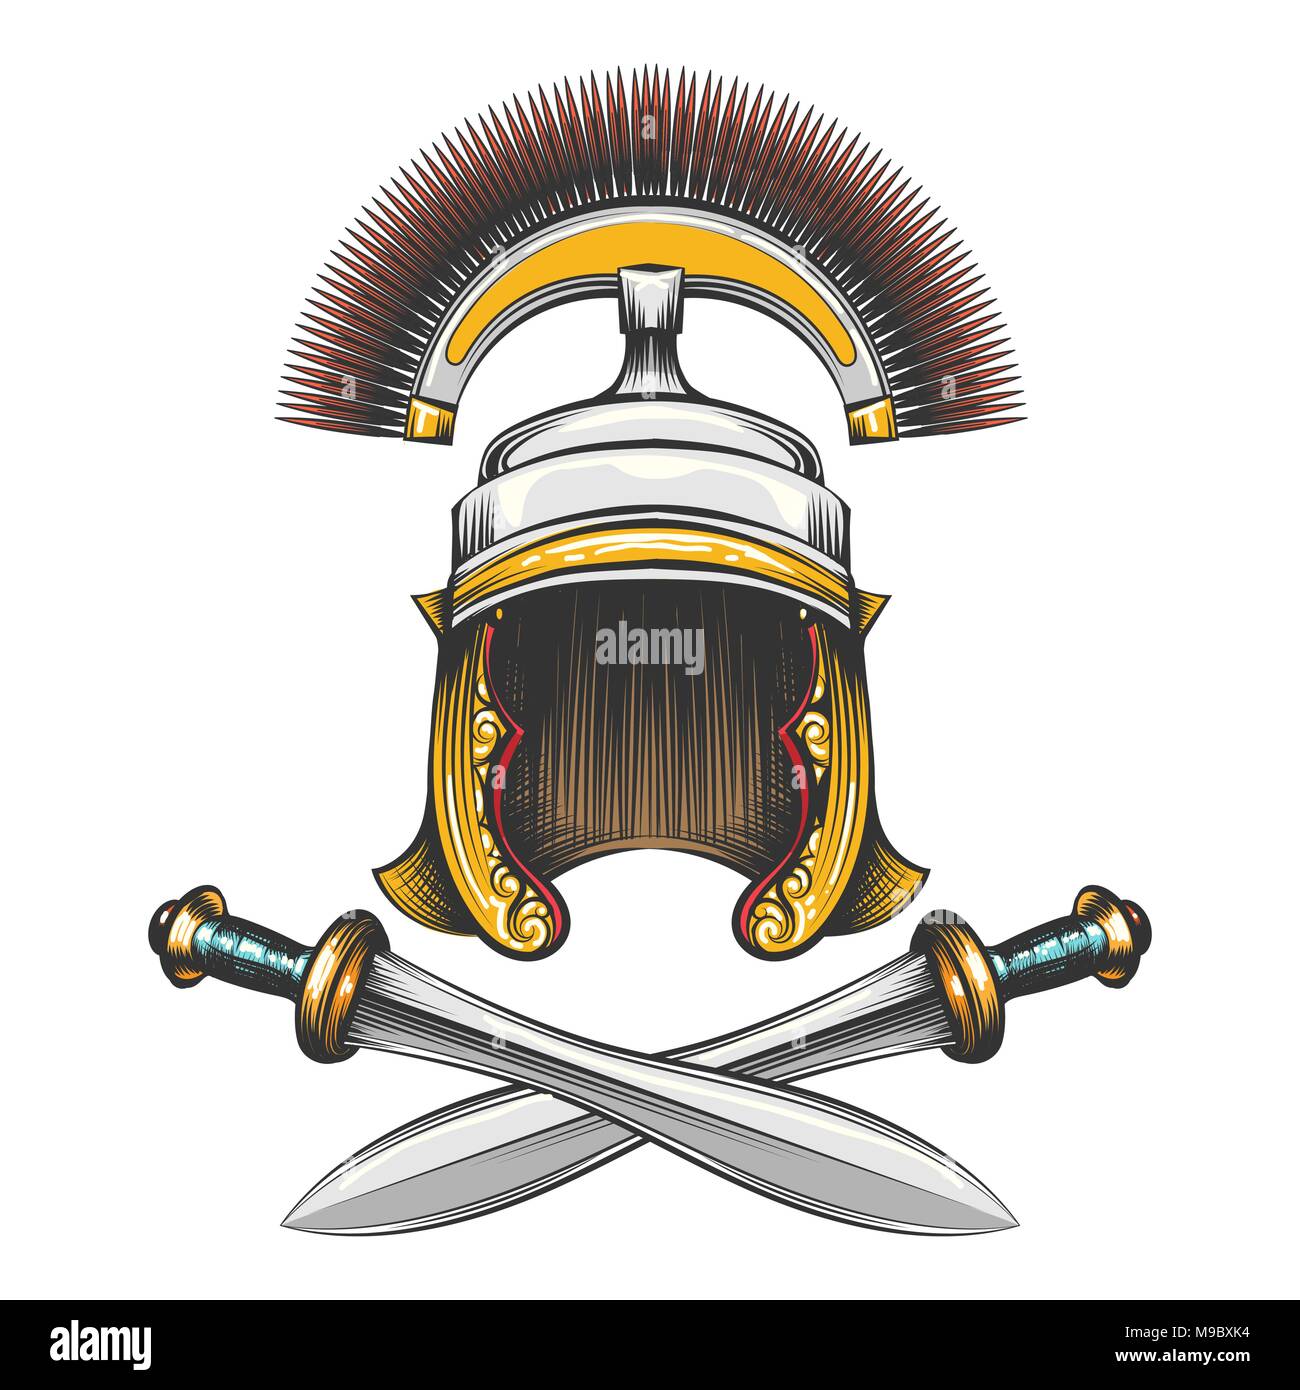 Impero romano centurion casco con le spade incrociate disegnati in stile di incisione. Illustrazione Vettoriale. Illustrazione Vettoriale